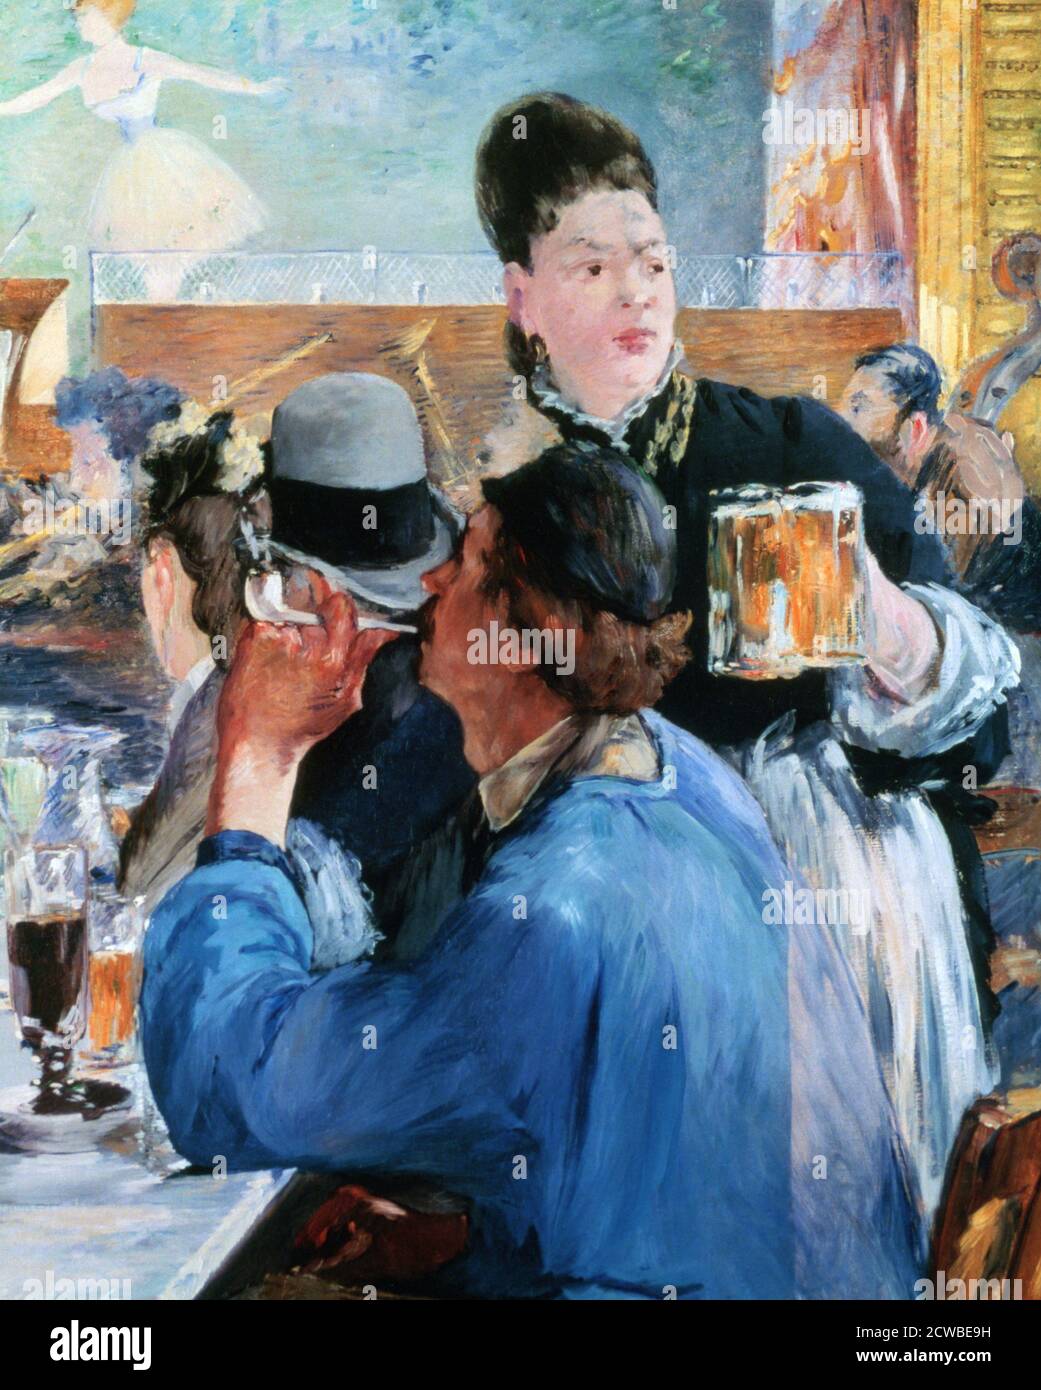 Corner of a Cafe Concert', 1878-1880. Artista: Edouard Manet. Edouard Manet (1832-1883) è stato un pittore modernista francese. Fu uno dei primi artisti del XIX secolo a dipingere la vita moderna. Foto Stock